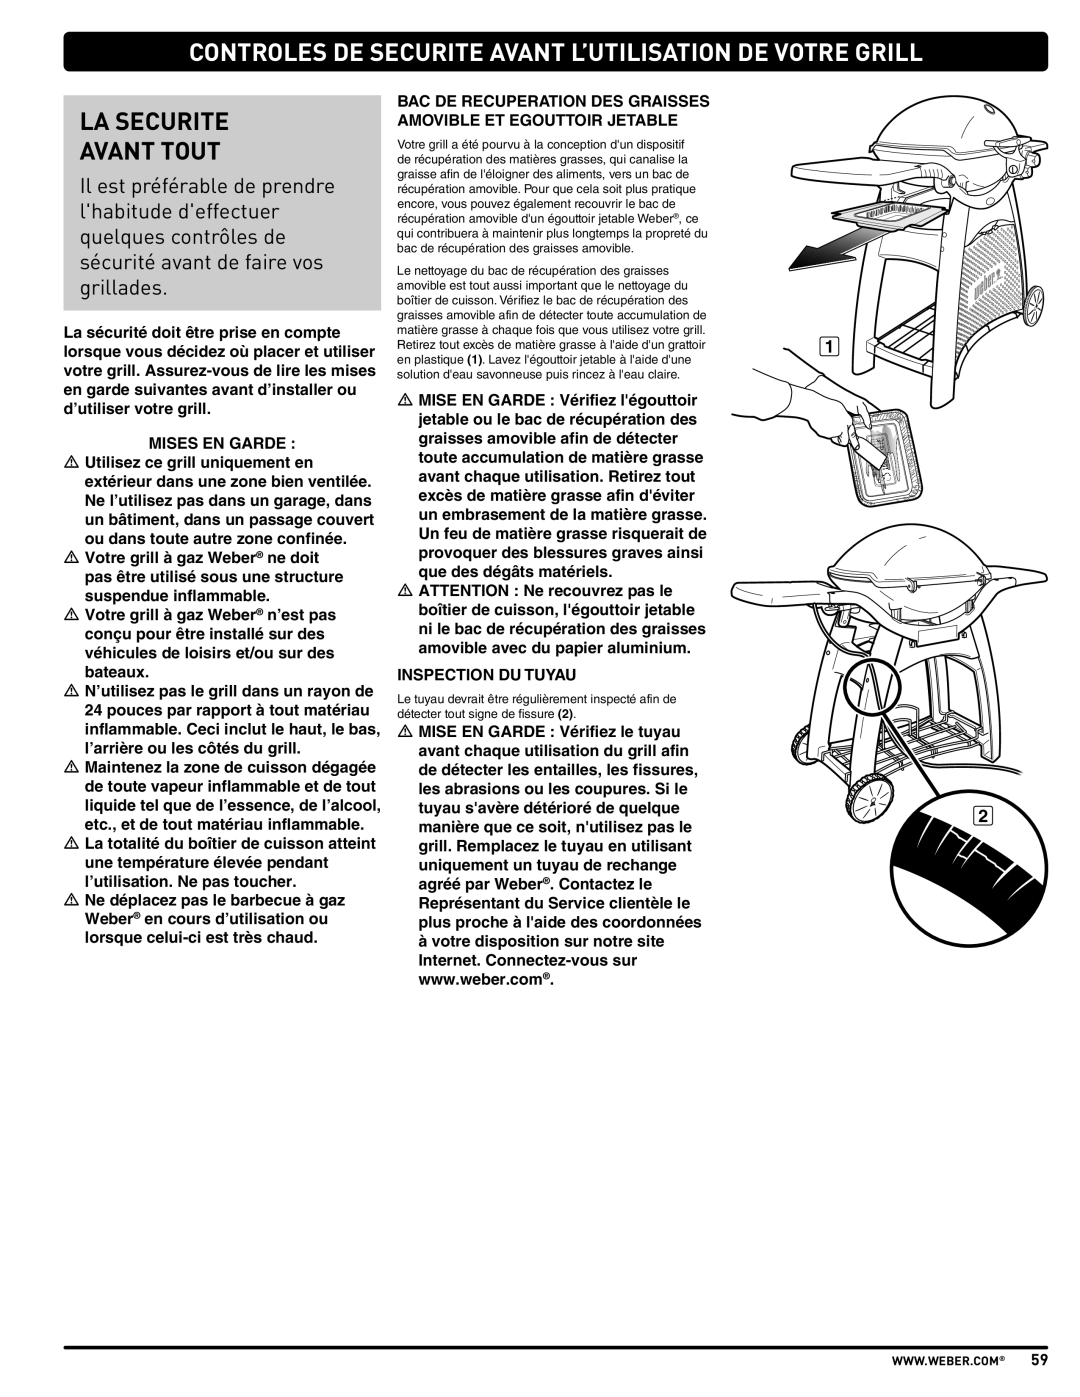 Weber 57515 manual Controles De Securite Avant L’Utilisation De Votre Grill, La Securite Avant Tout 